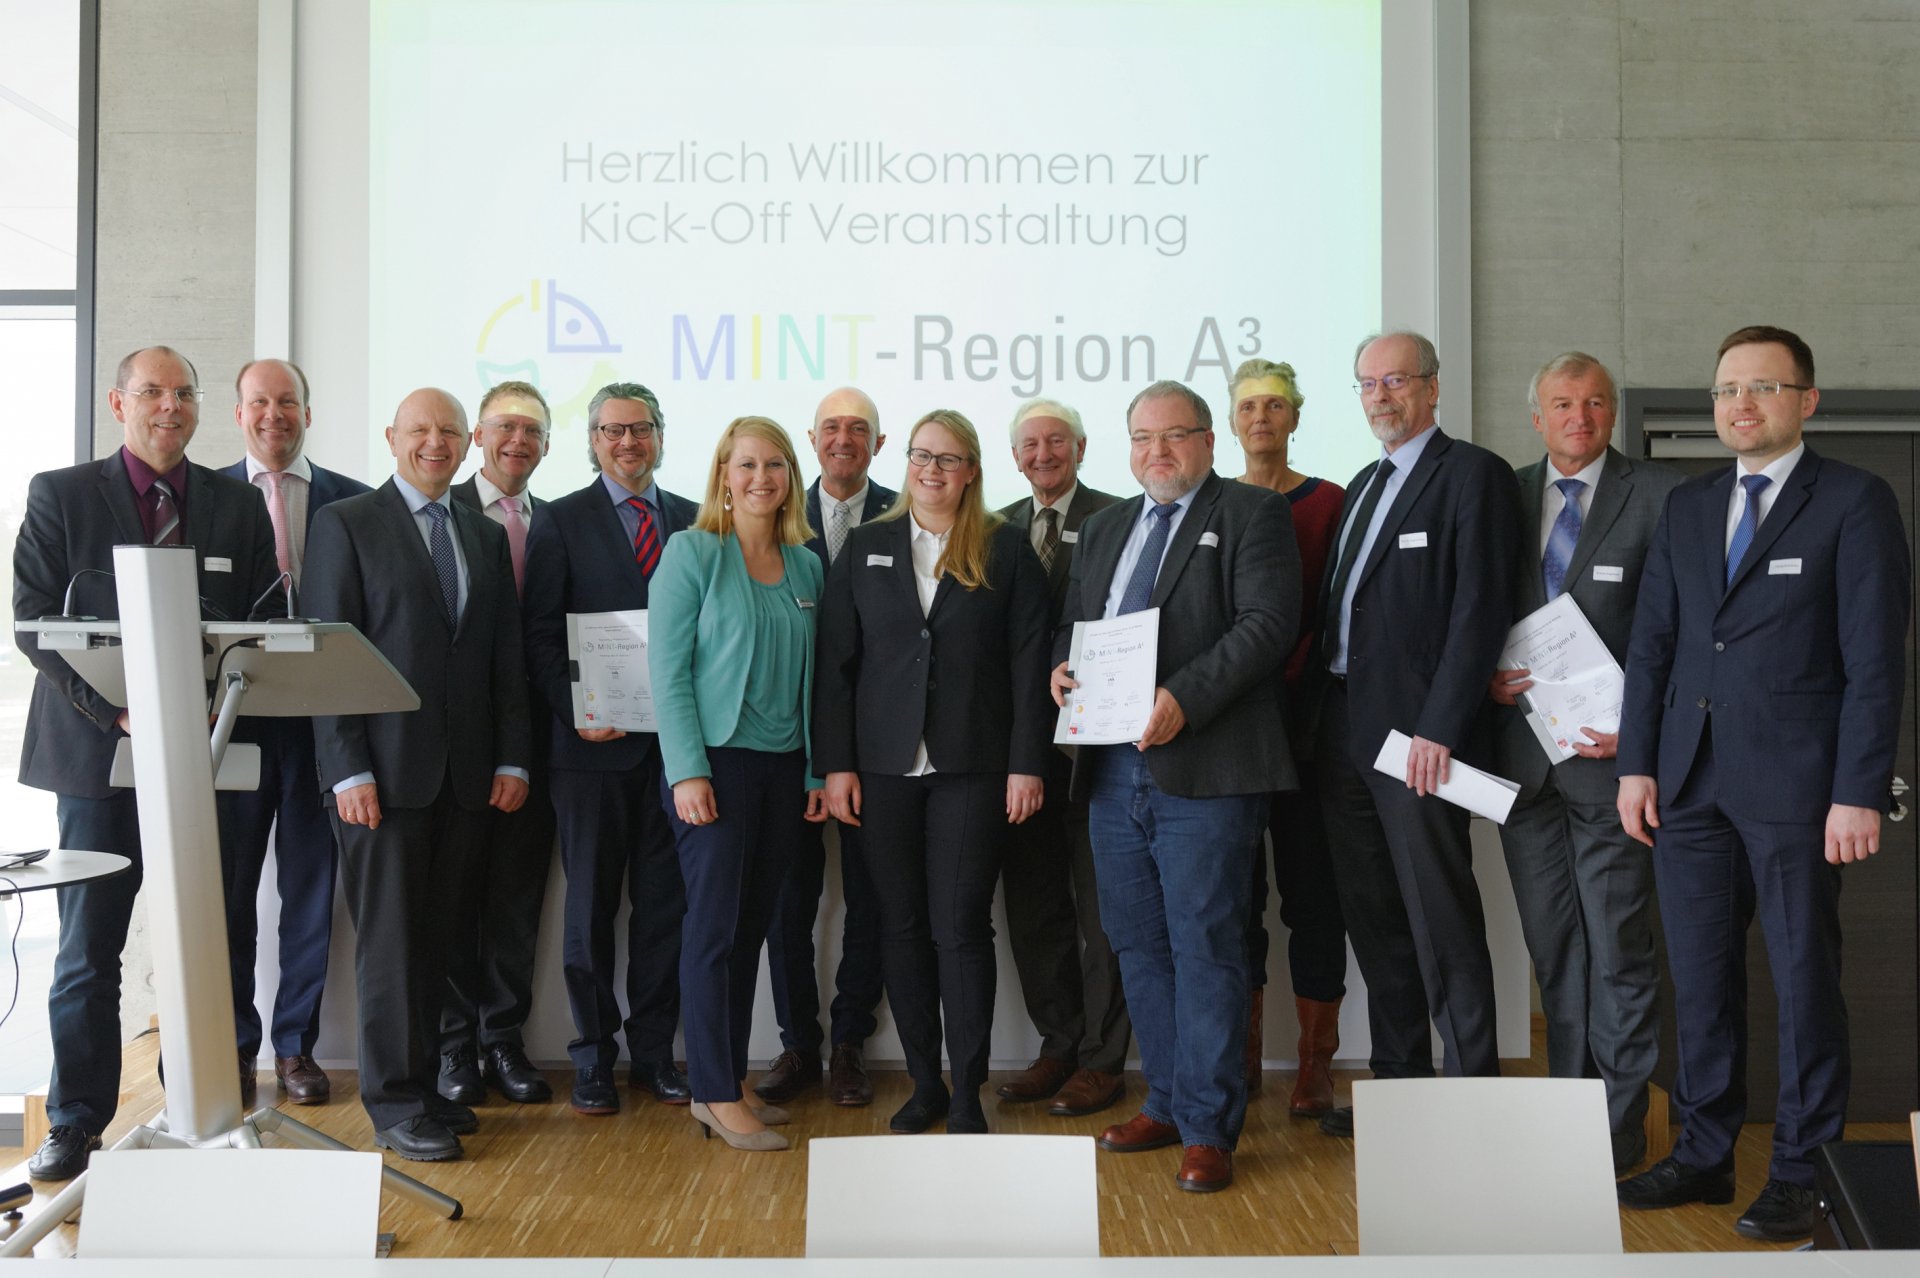 Der symbolischen Startschuss für das Kooperationsprojekt wurde am 27. April 2017 im Technologiezentrum Augsburg (TZA) gegeben. 